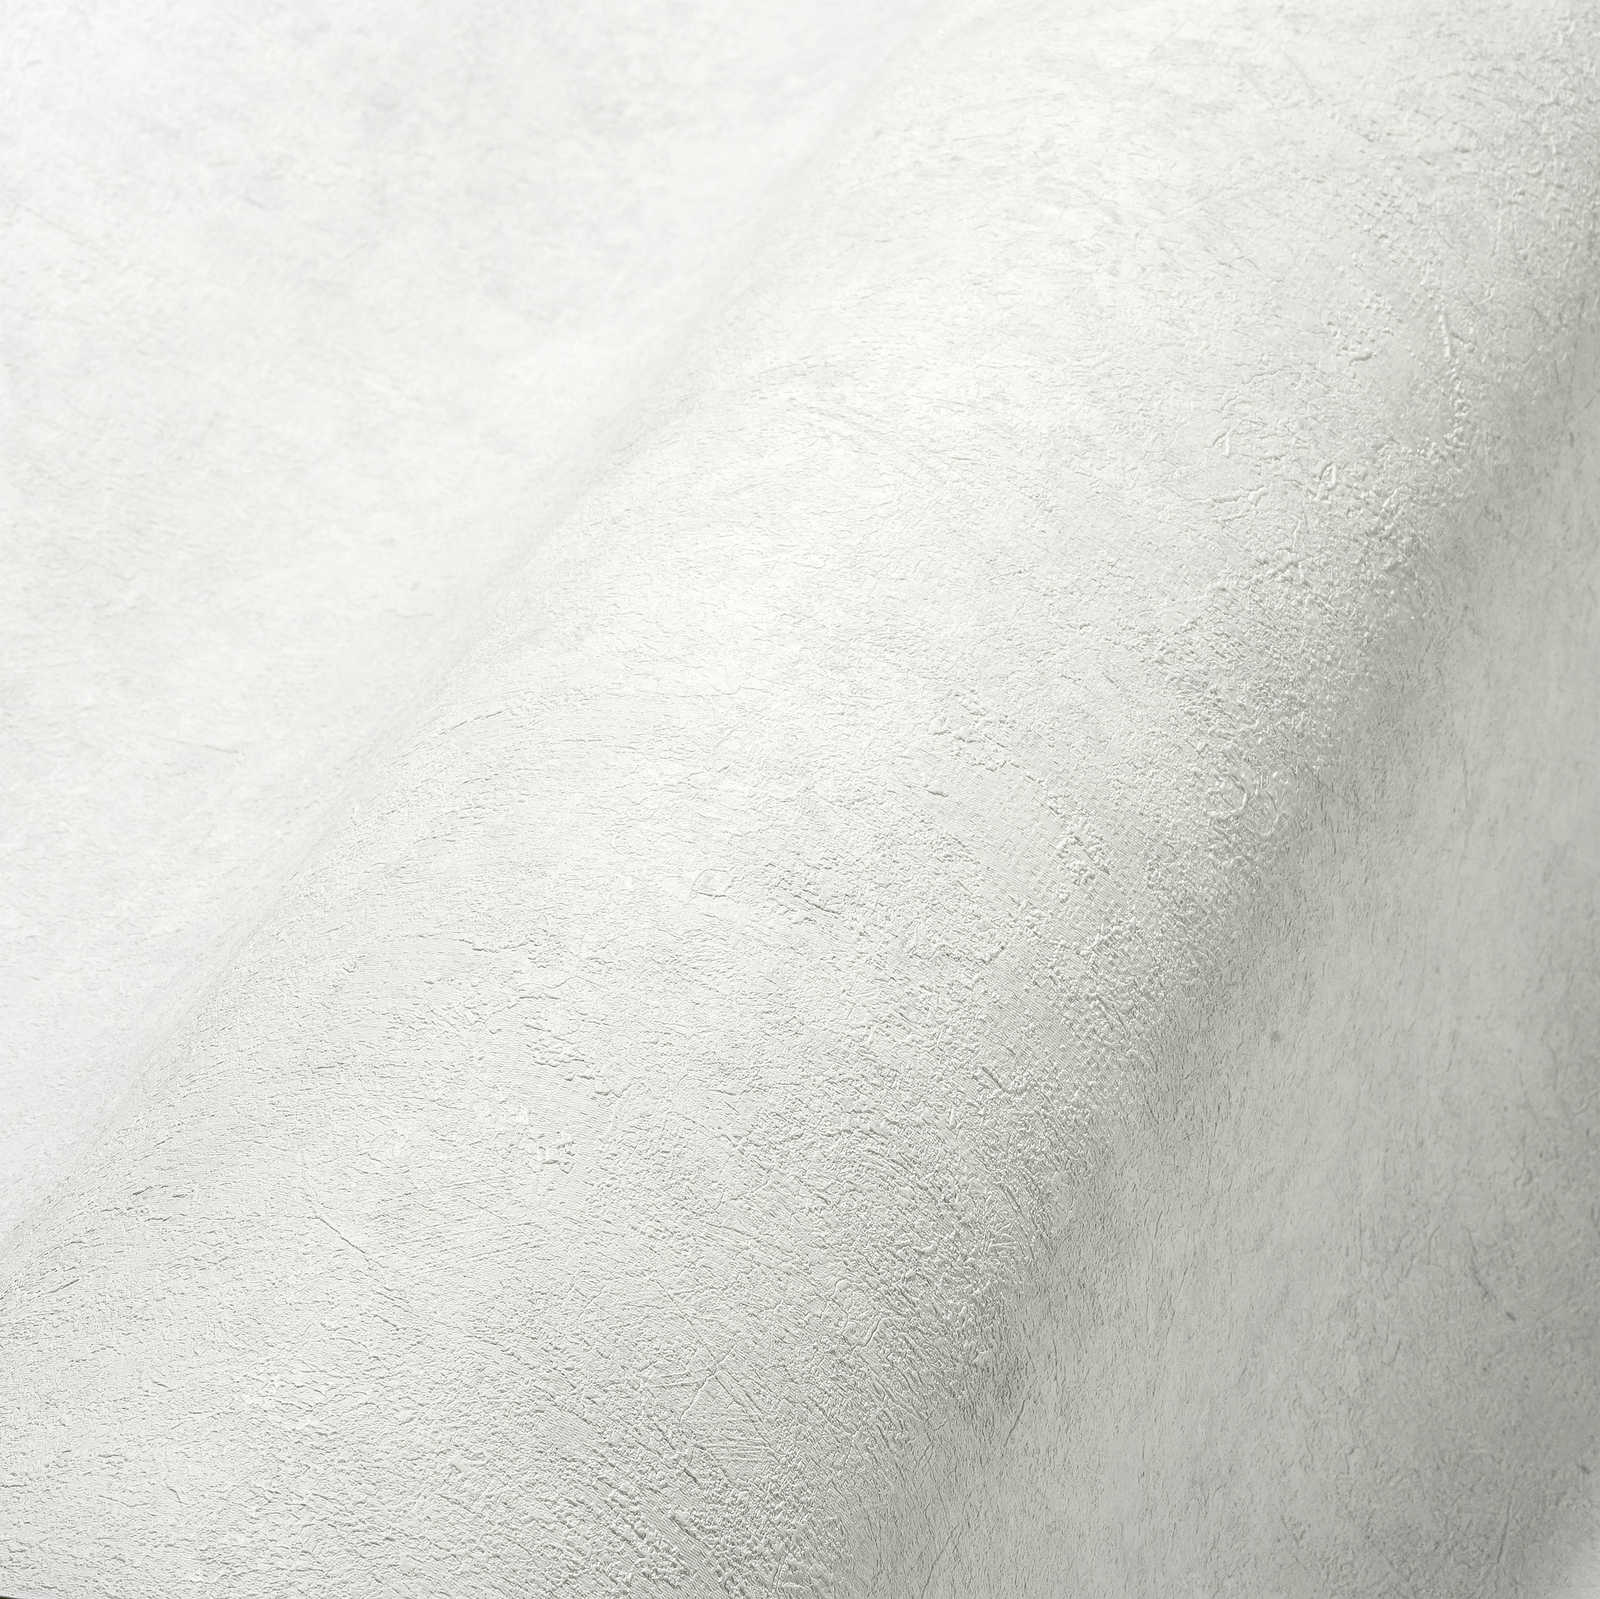             Eenheidsbehang met structuurpatroon in subtiele tinten - wit, grijs
        